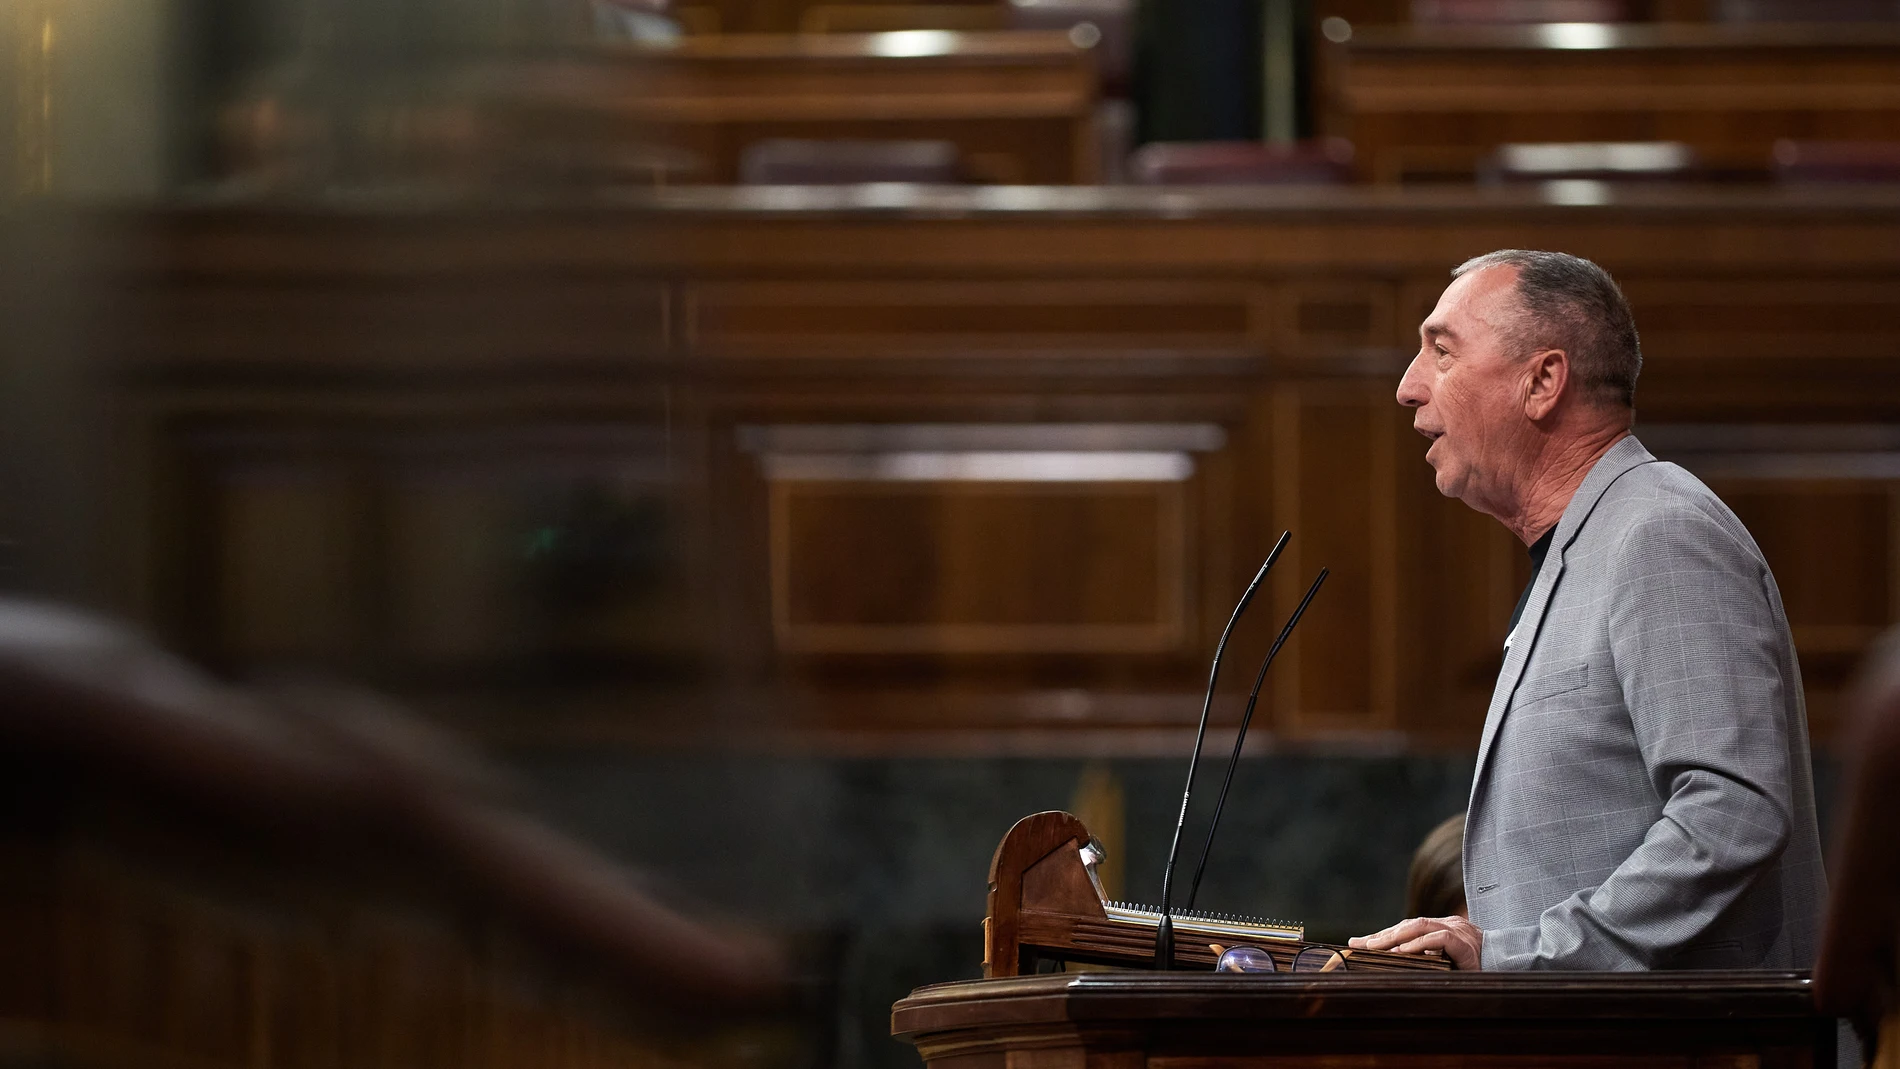 El diputado de Més Compromís Joan Baldoví interviene durante la sesión plenaria del Congreso de los Diputados celebrada este martes en Madrid